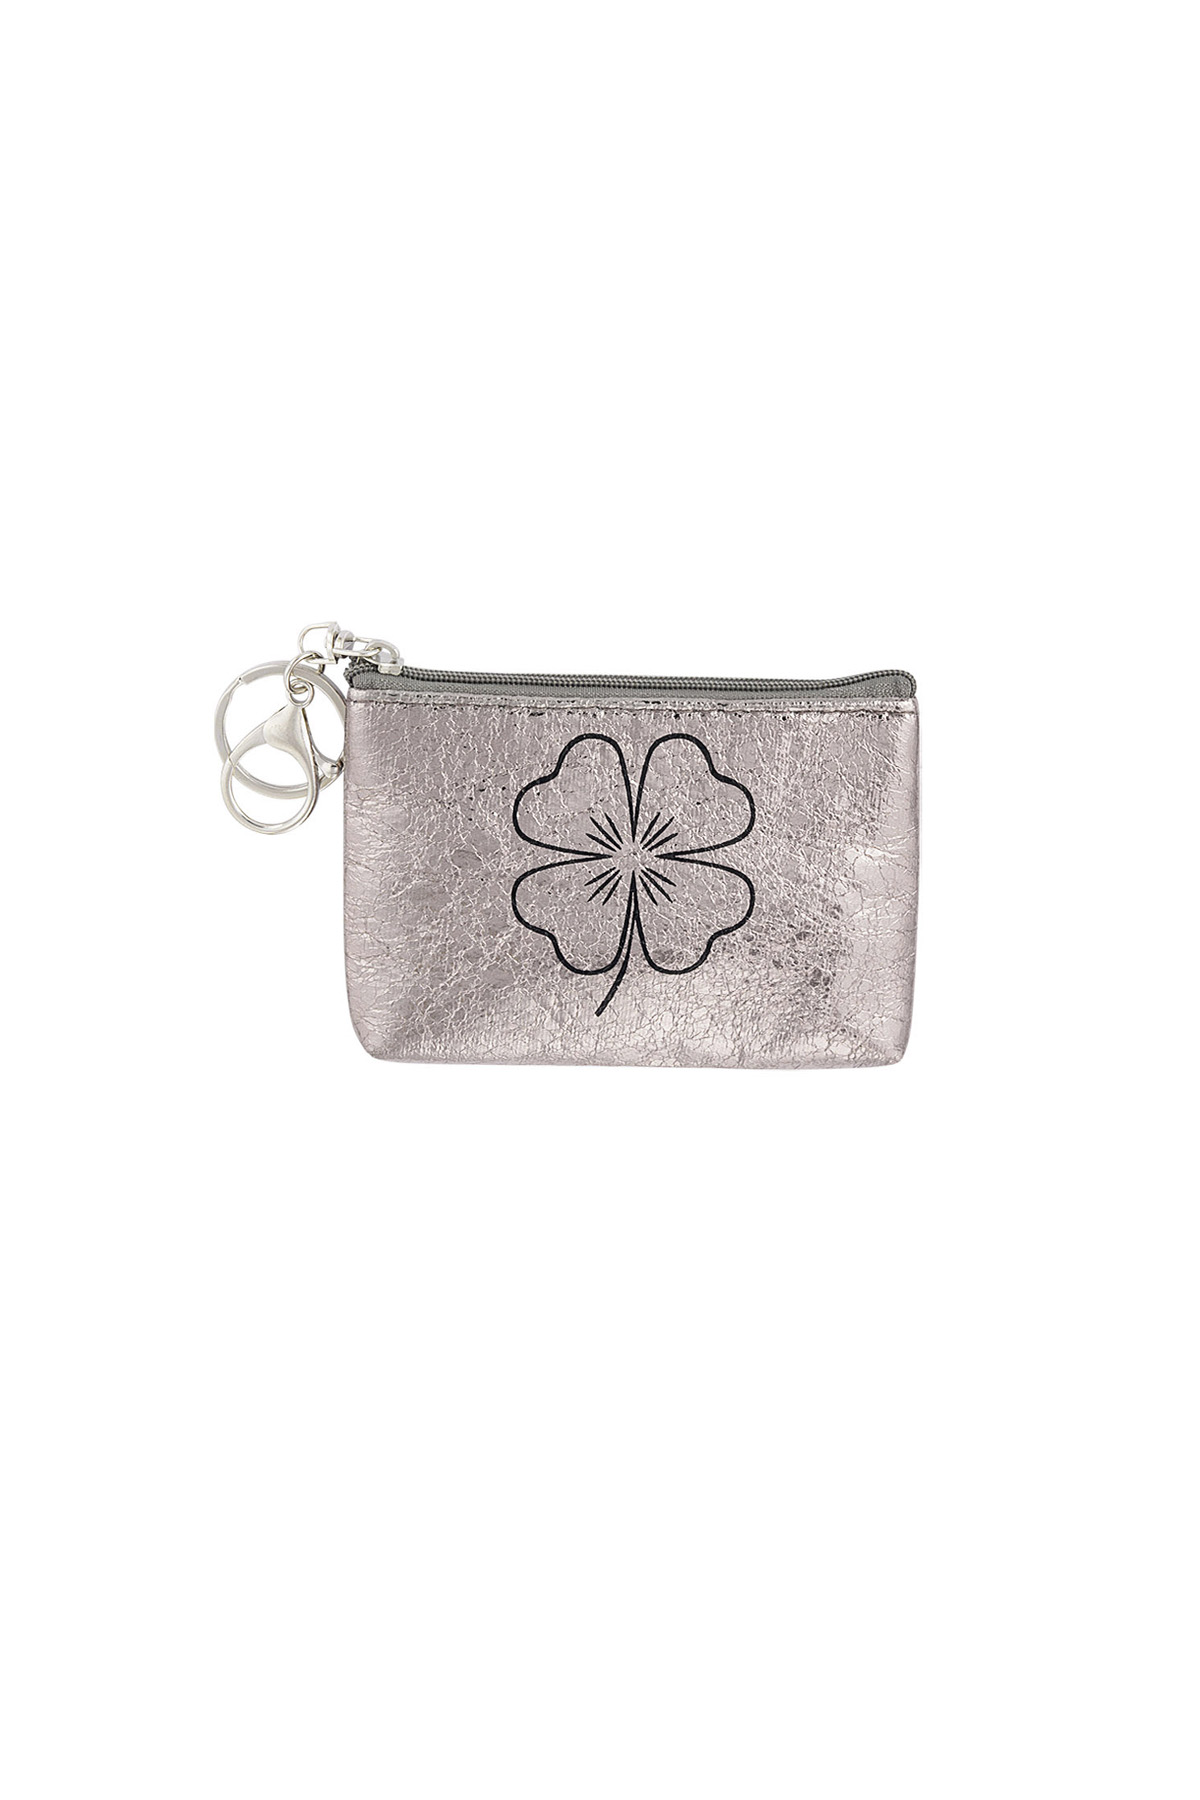 Anahtarlık cüzdan metalik yonca - gümüş h5 